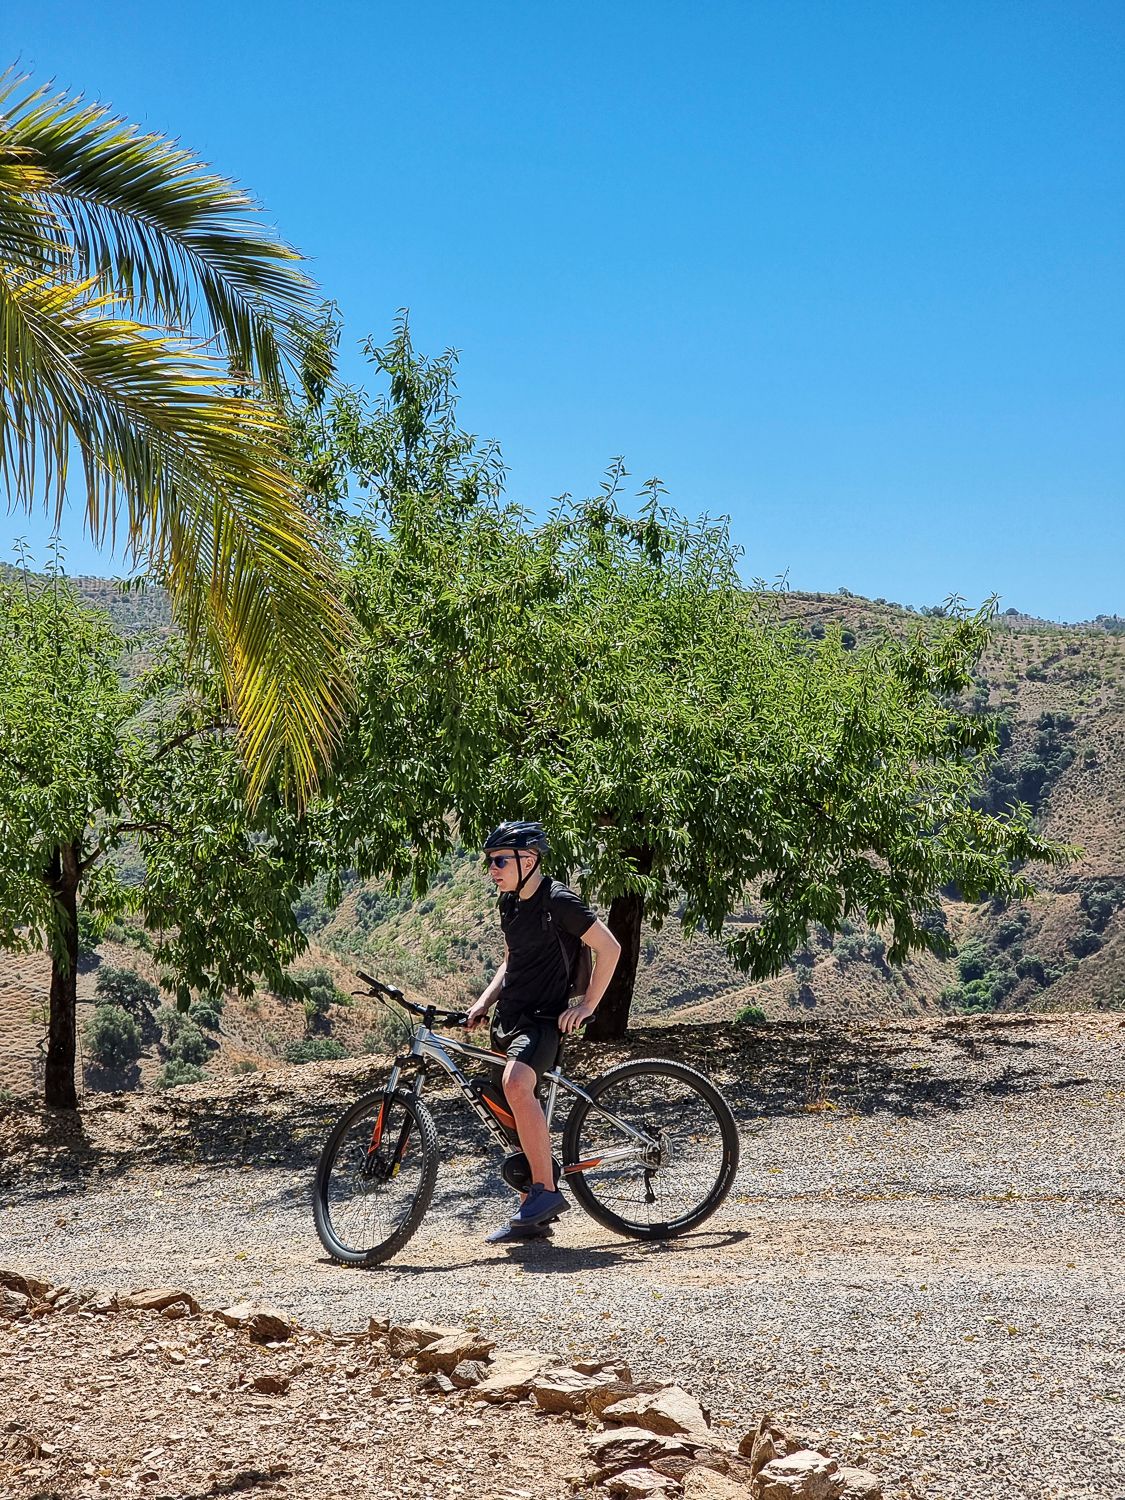 Patikointia ja pyöräilyä Andalusiassa